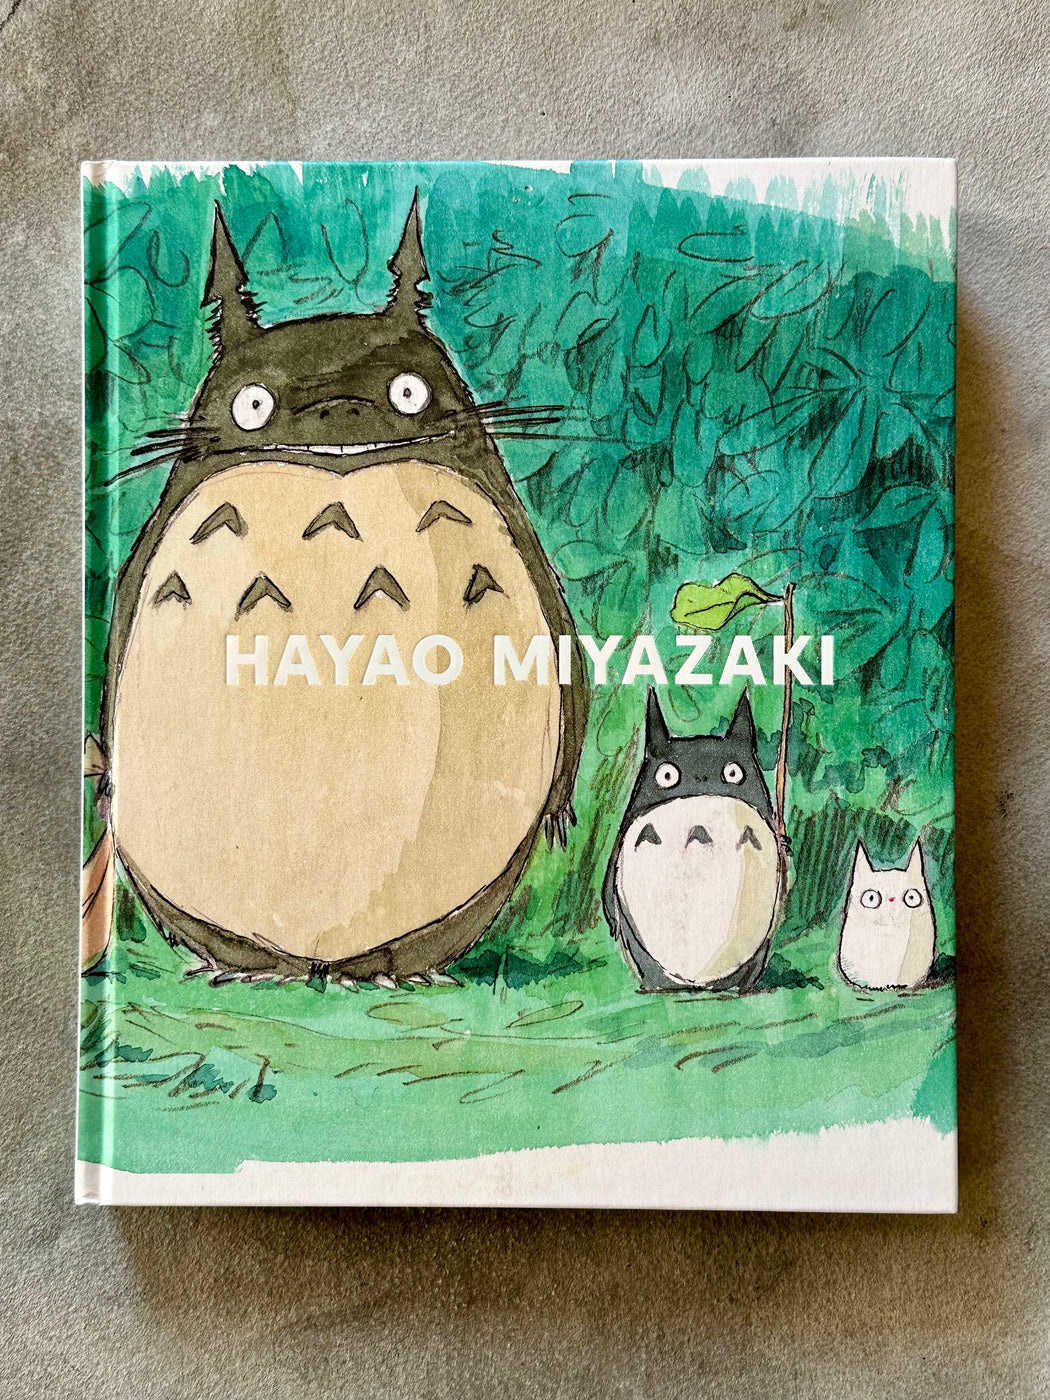 "Hayao Miyazaki"